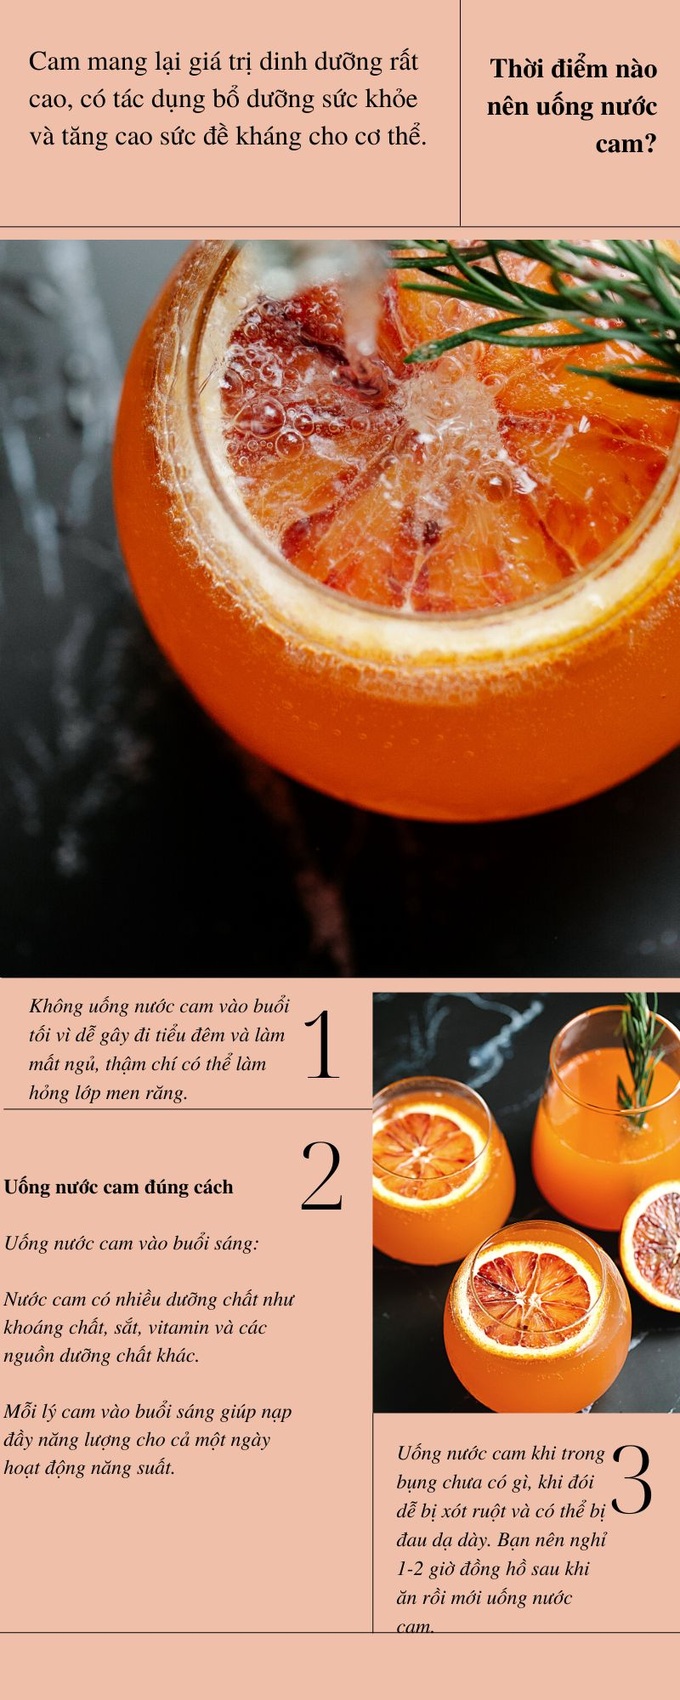 Thời điểm uống nước cam không tốt cho cơ thể - 1